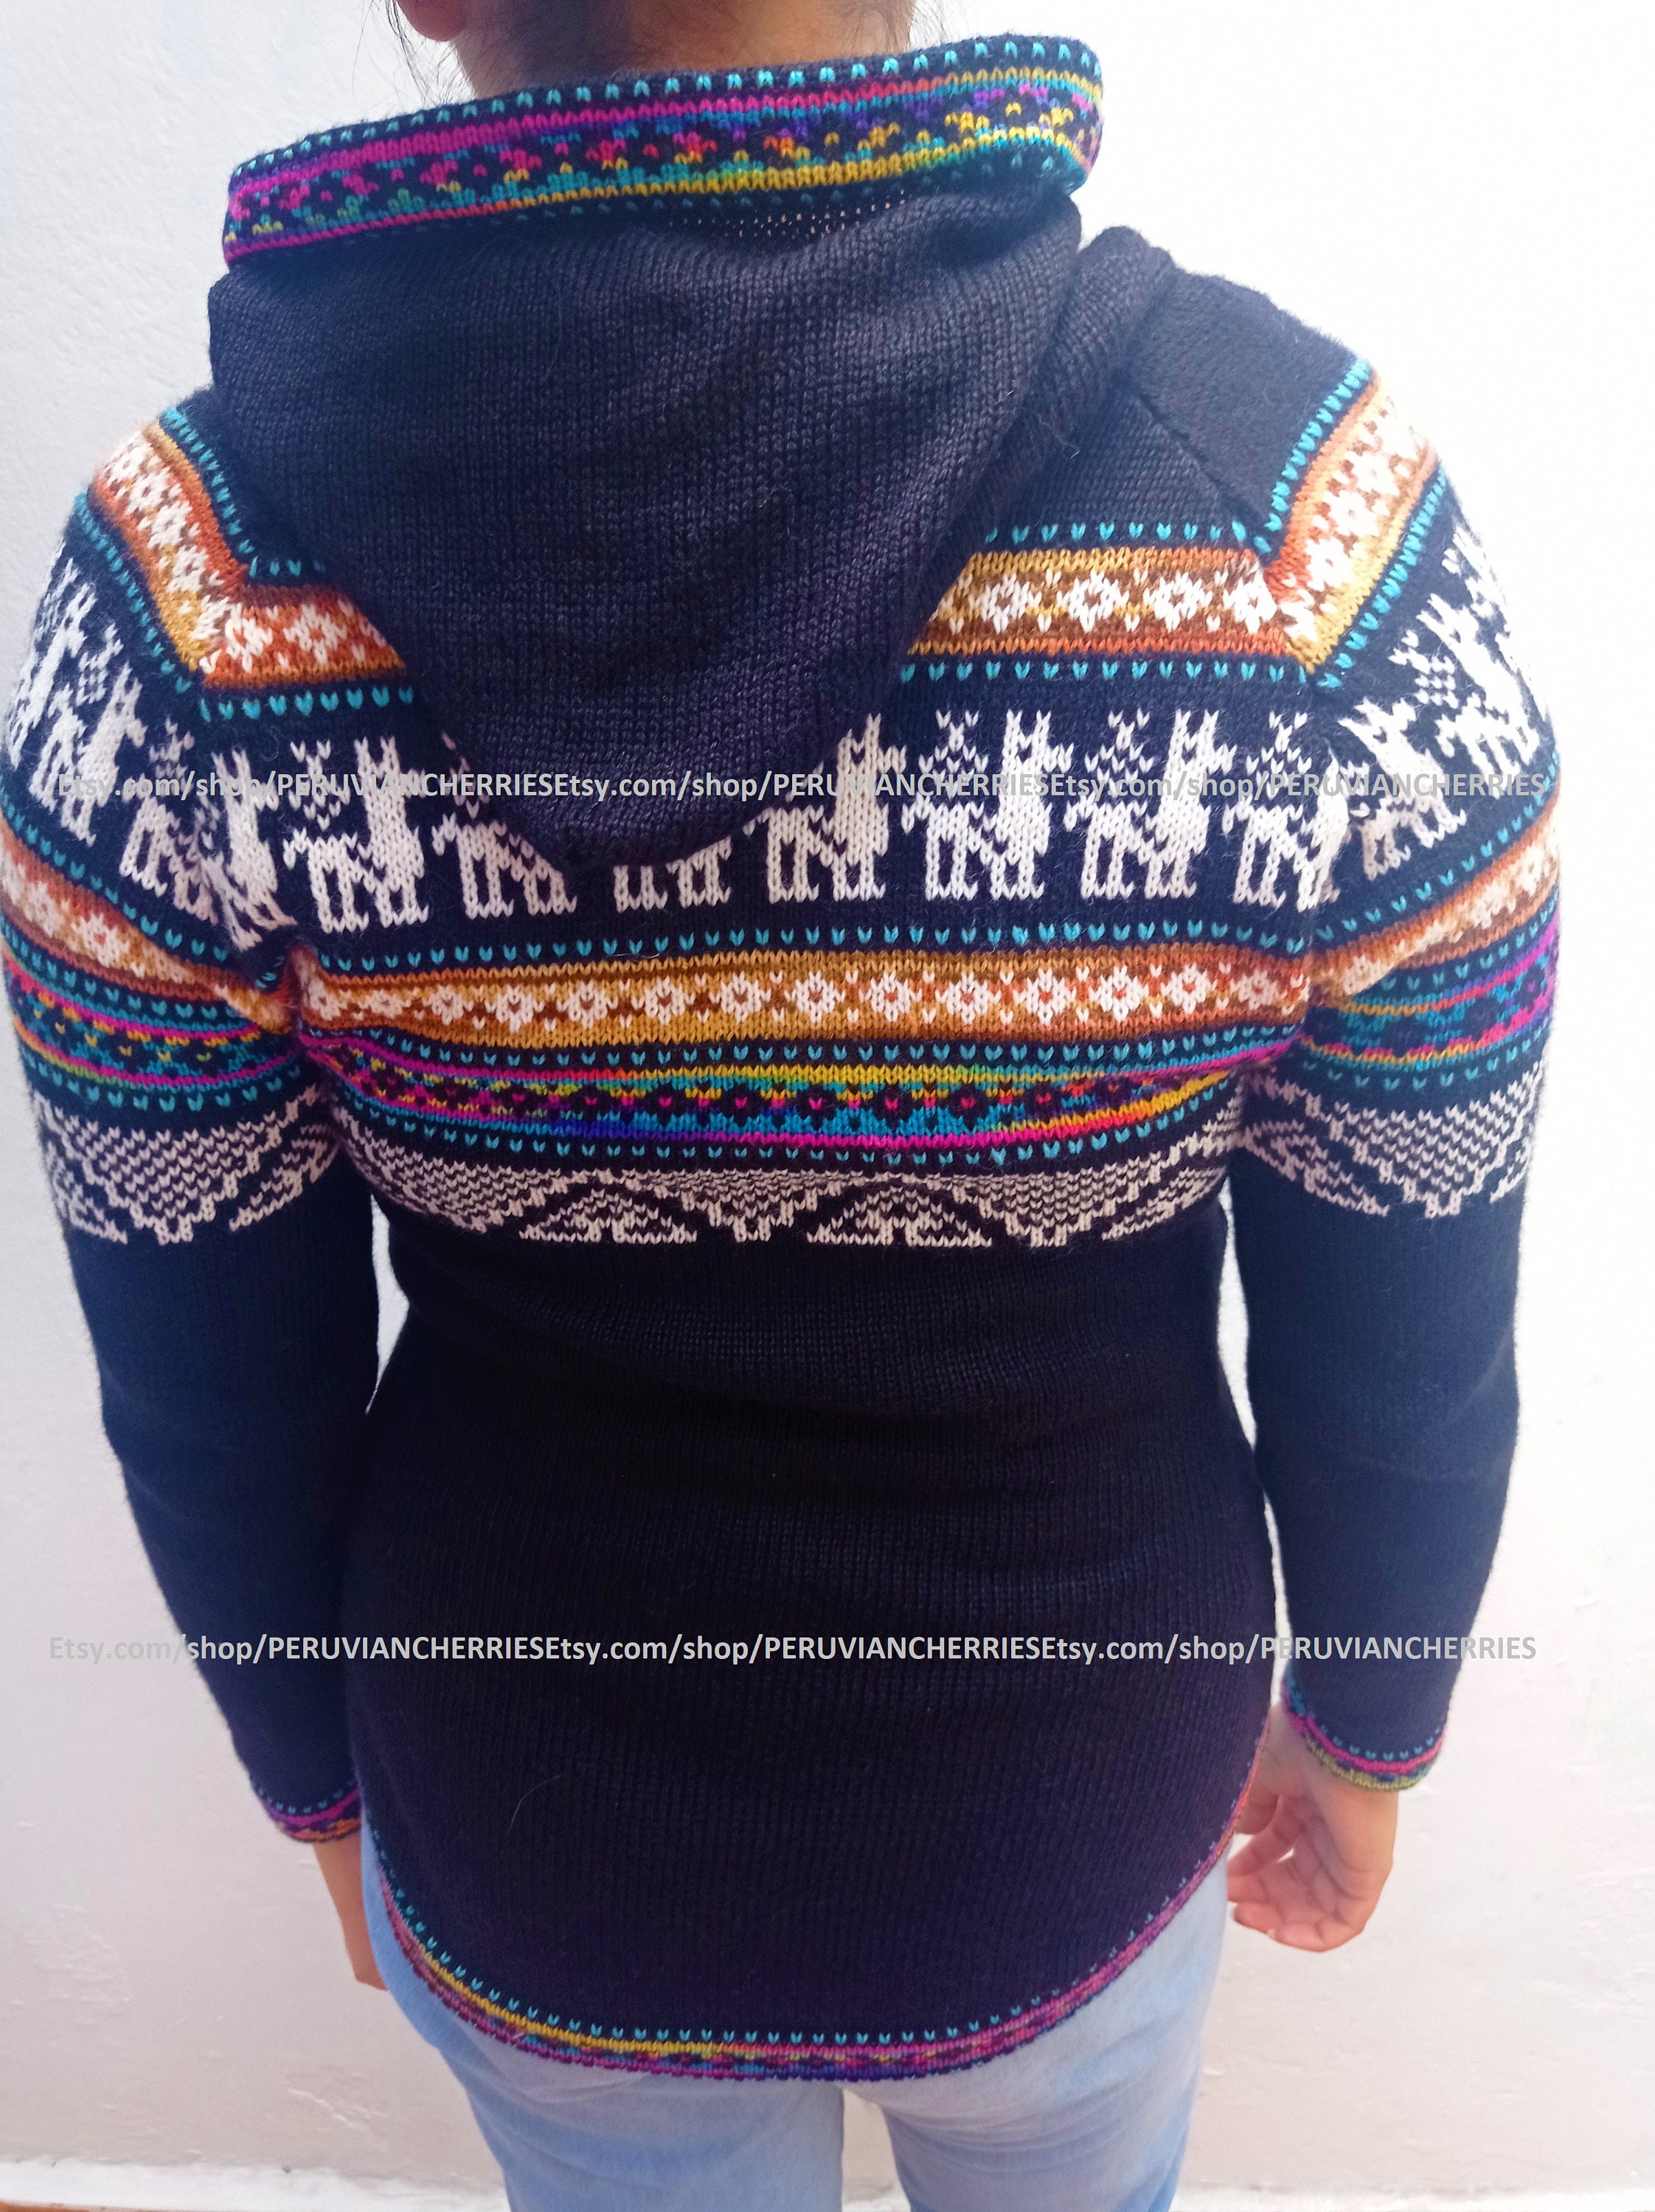 Alpaca sweater Woman alpaca sweater cardigan Alpaca fiber | Etsy